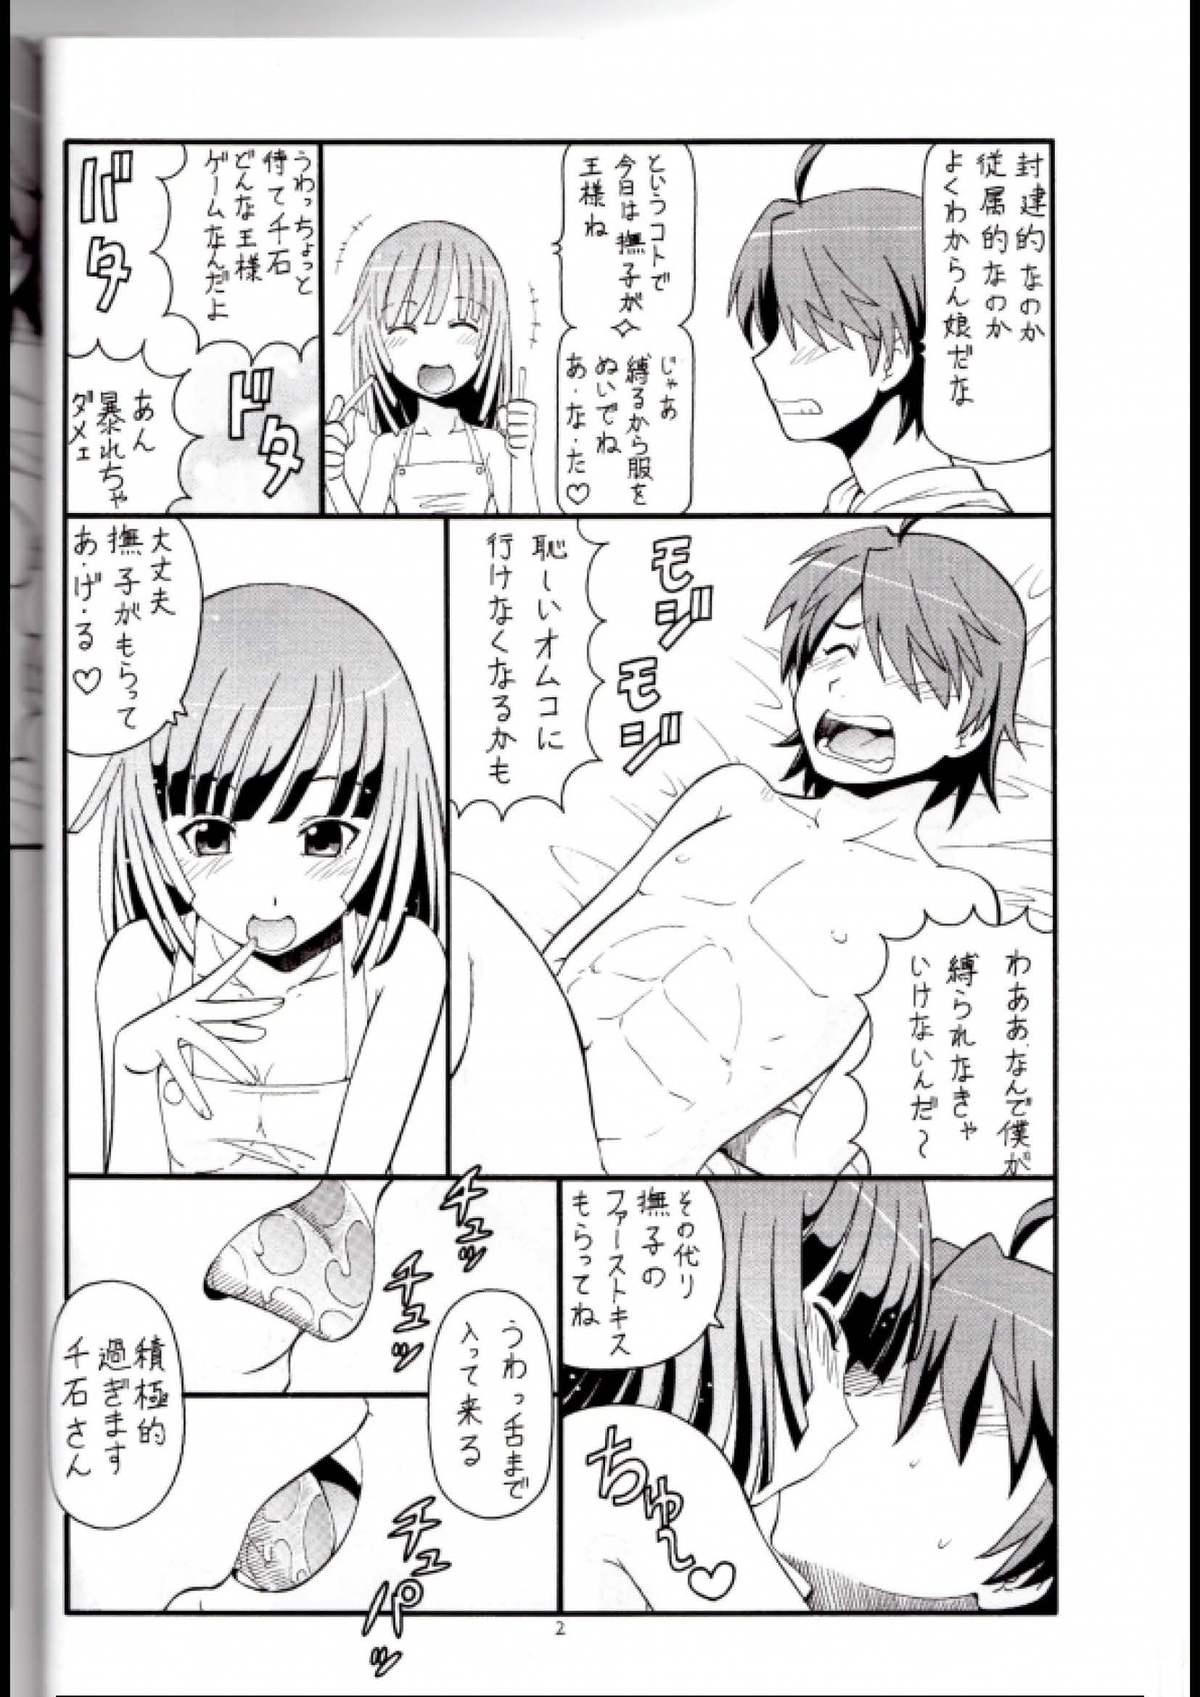 Toilet Hito ni Hakanai to Kaite "Araragi" to Yomu 2&3 - Bakemonogatari Thuylinh - Page 3